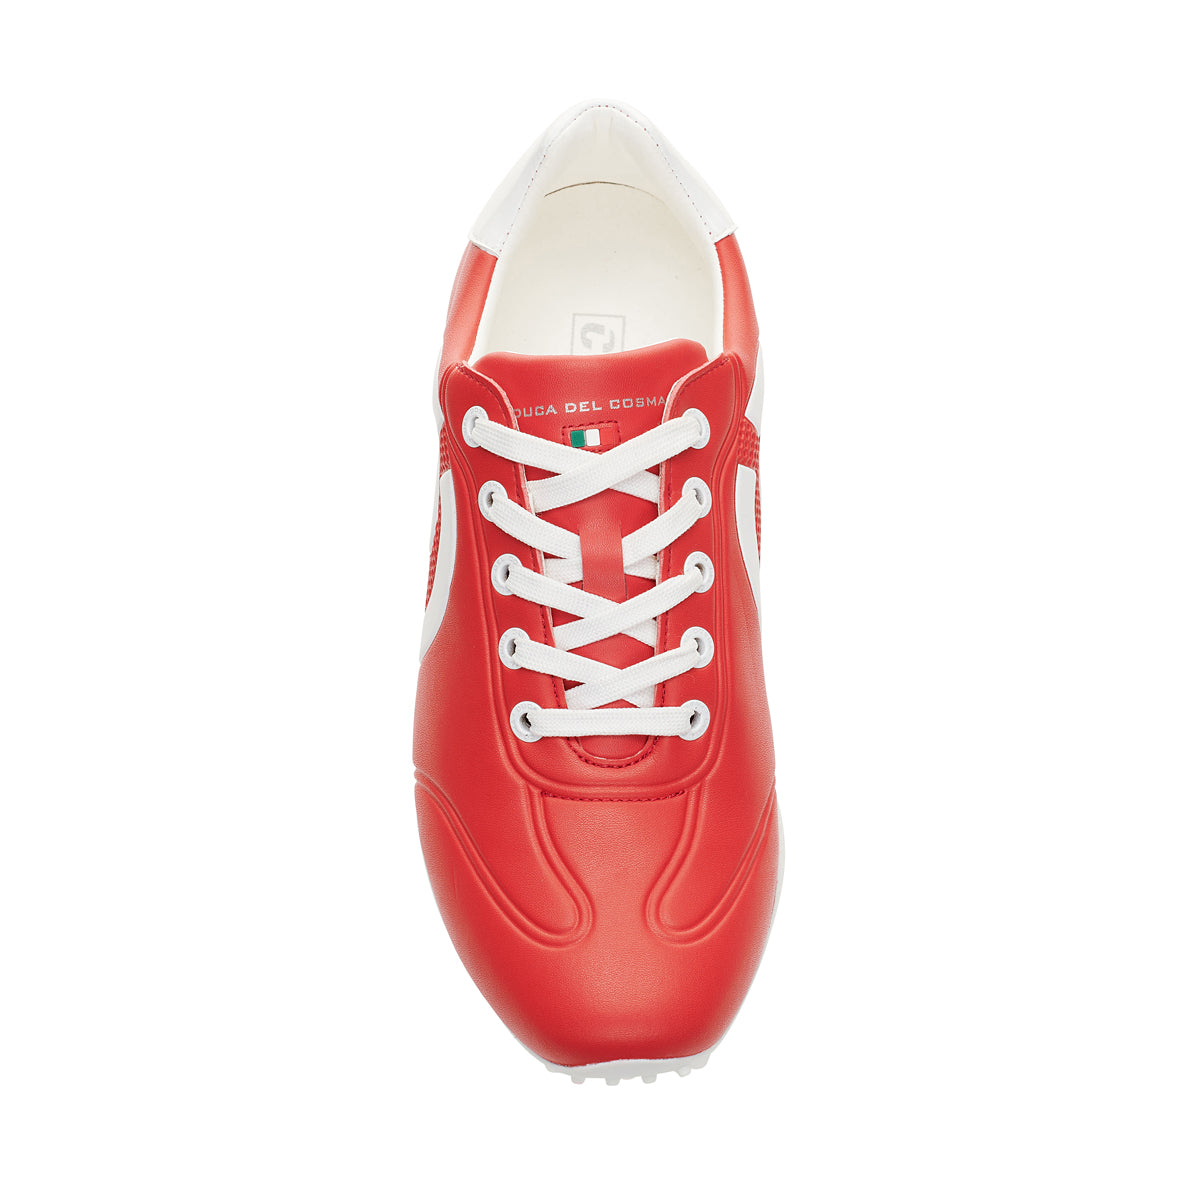 Queenscup Red Women's Golf Shoe